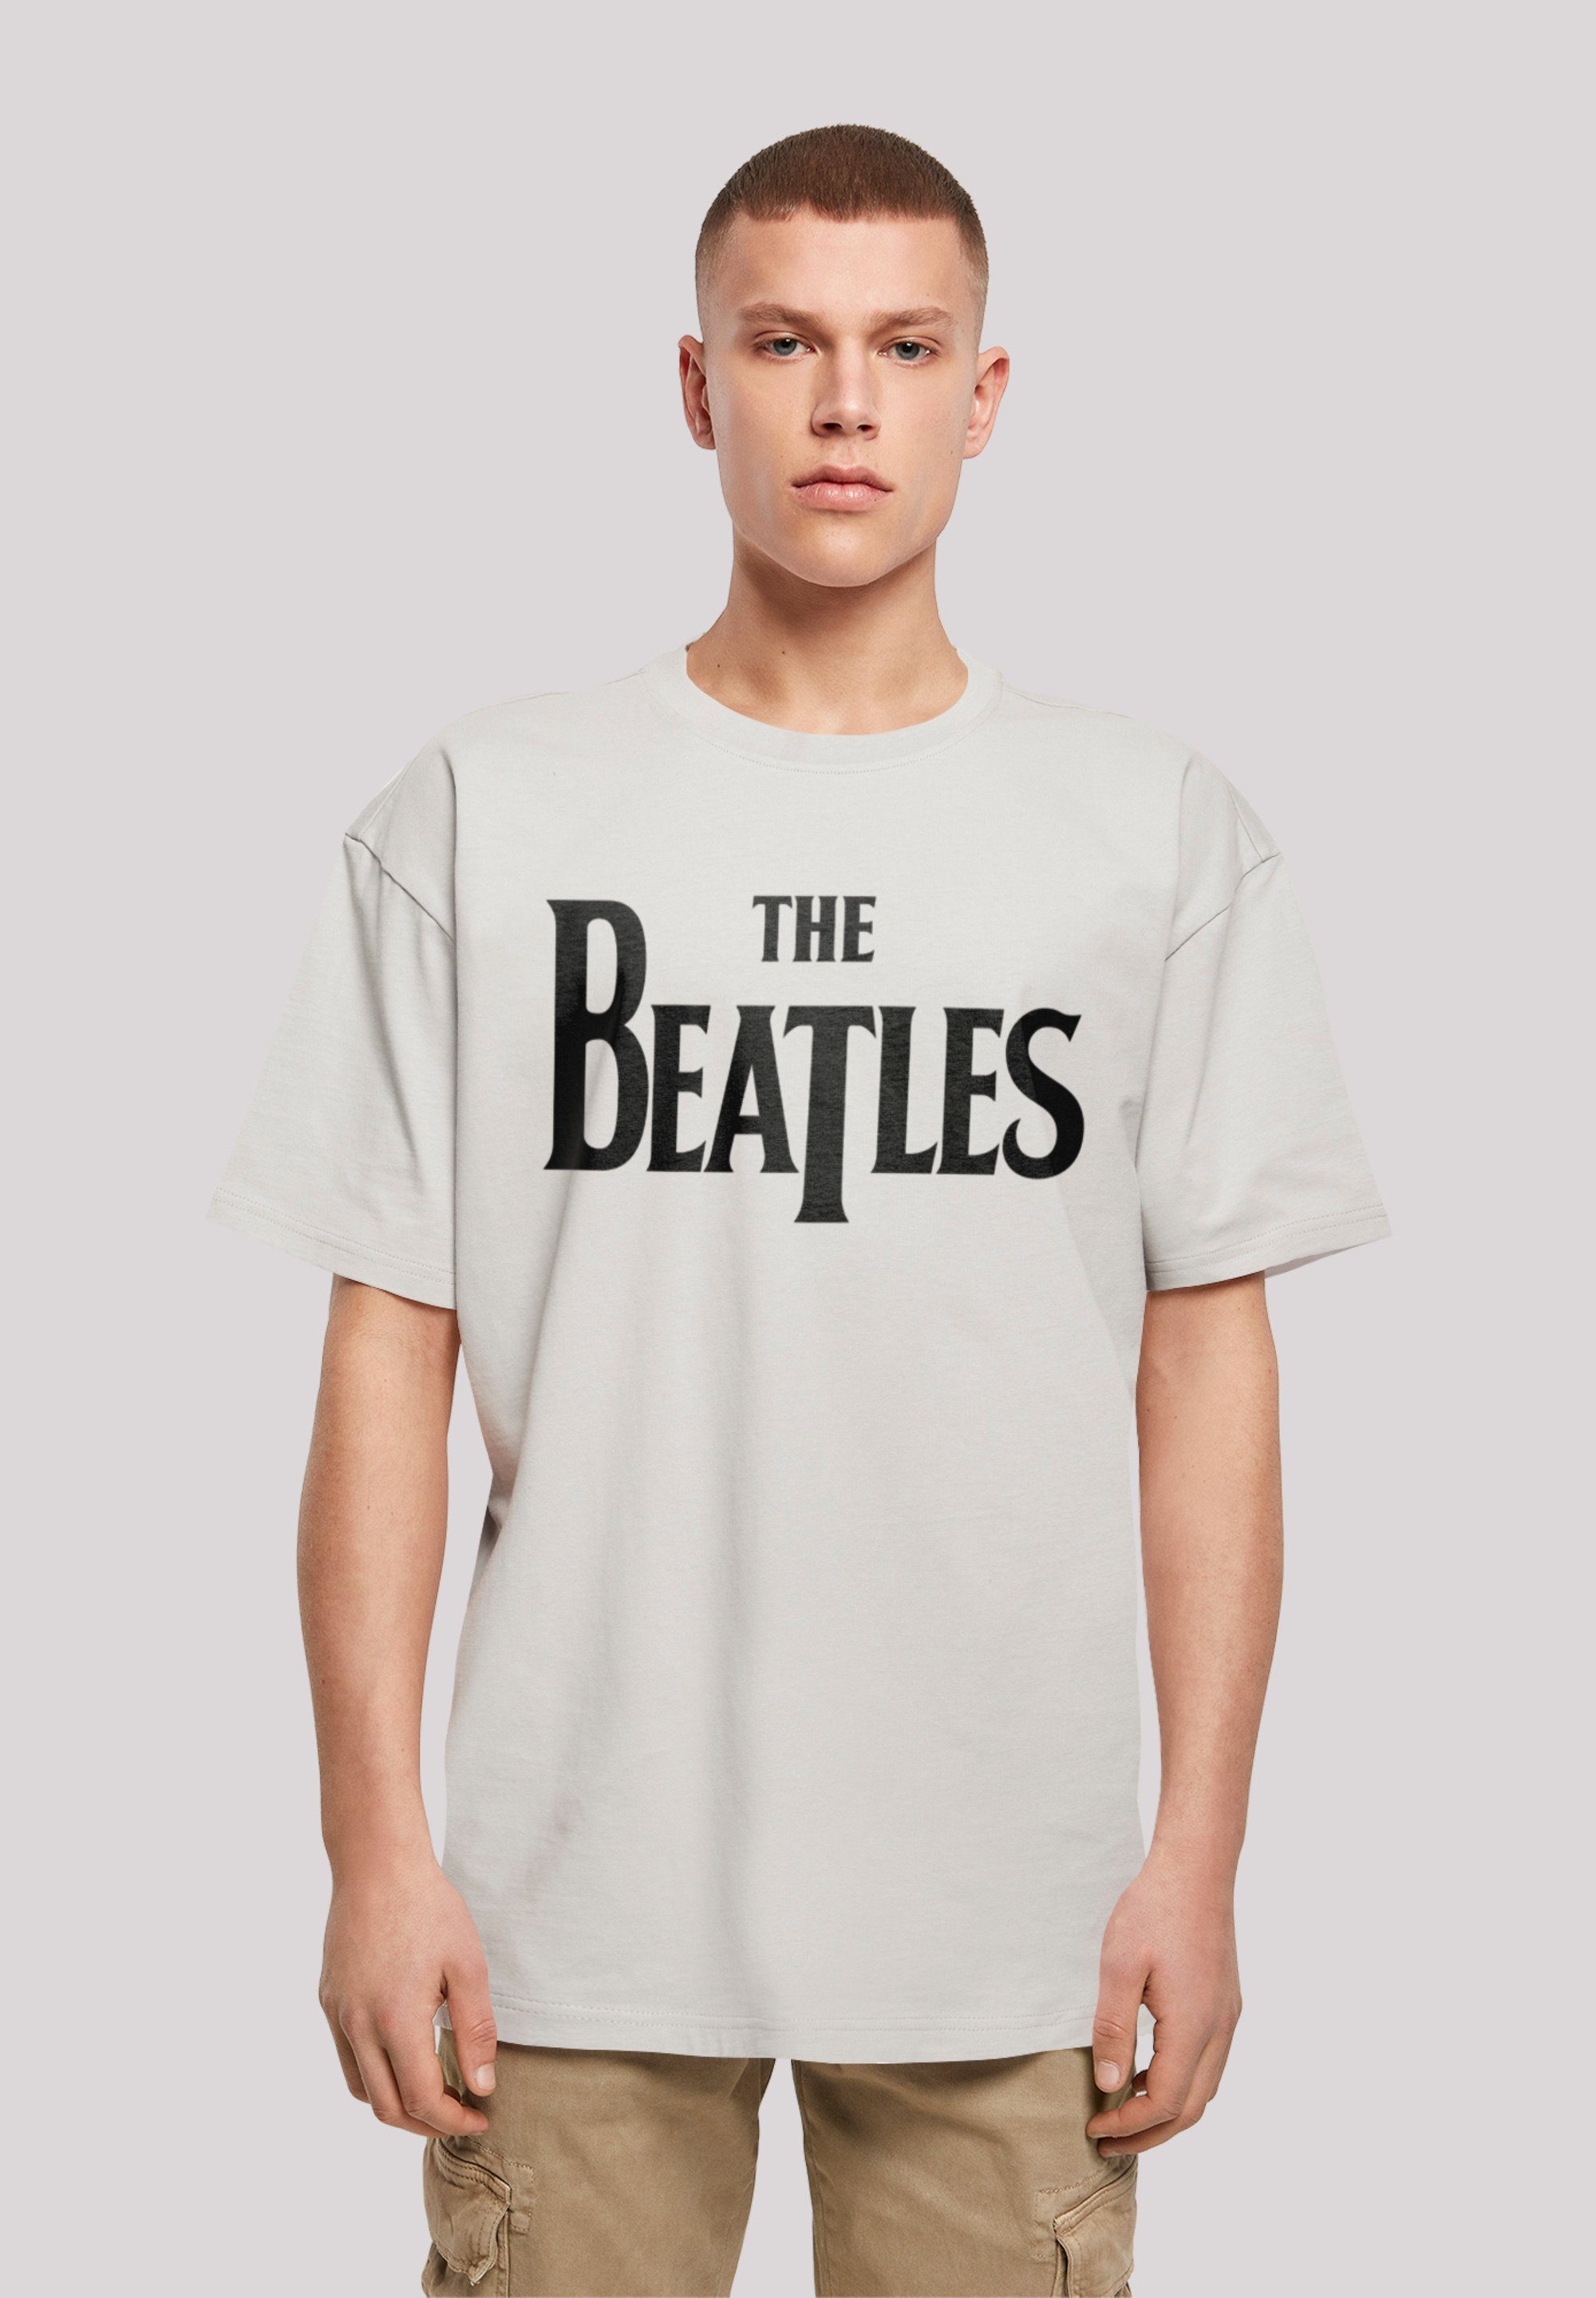 Drop T The Passform Band F4NT4STIC Schultern T-Shirt Logo und Black überschnittene Weite Print, Beatles